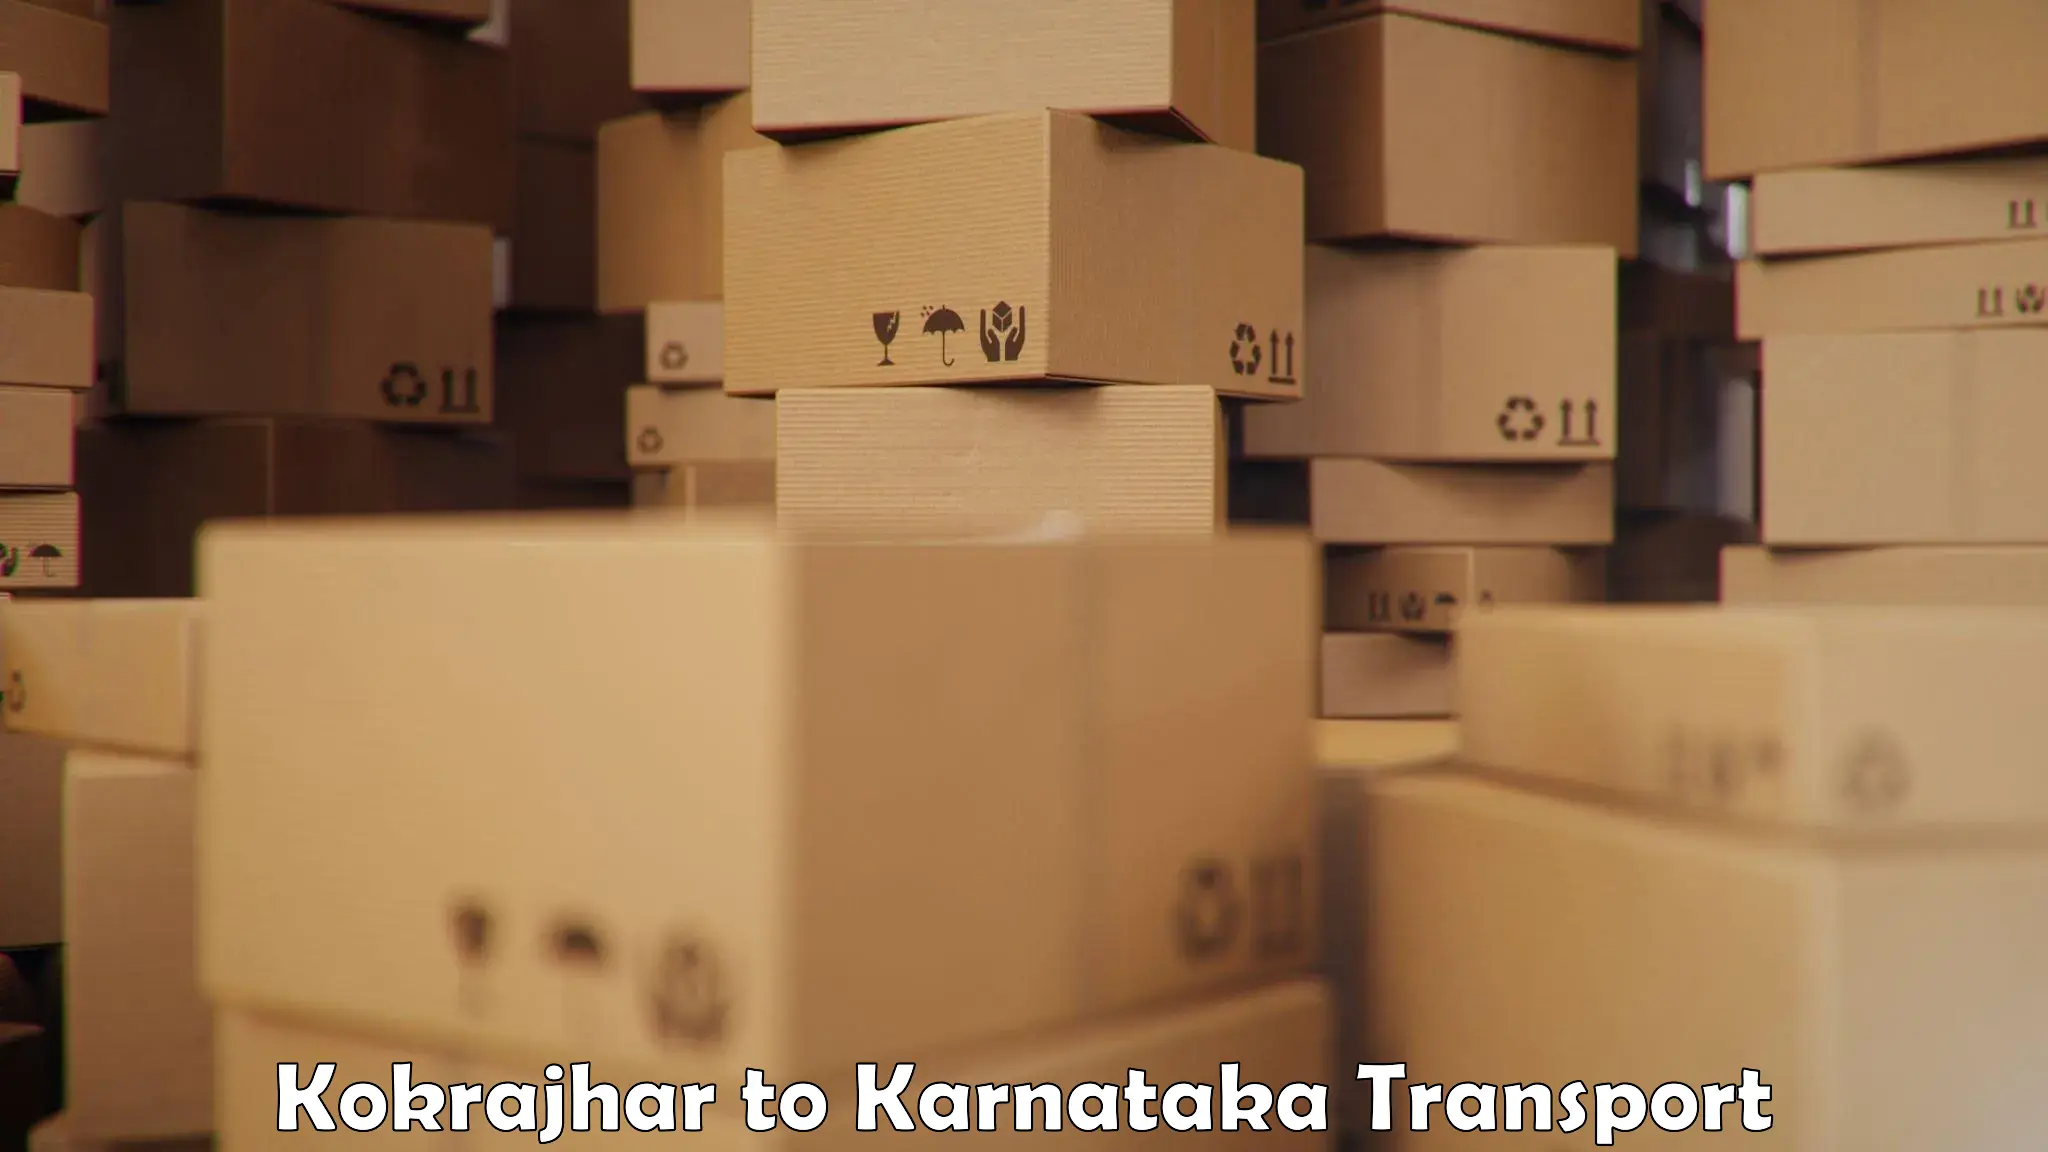 Furniture transport service Kokrajhar to Haliyal